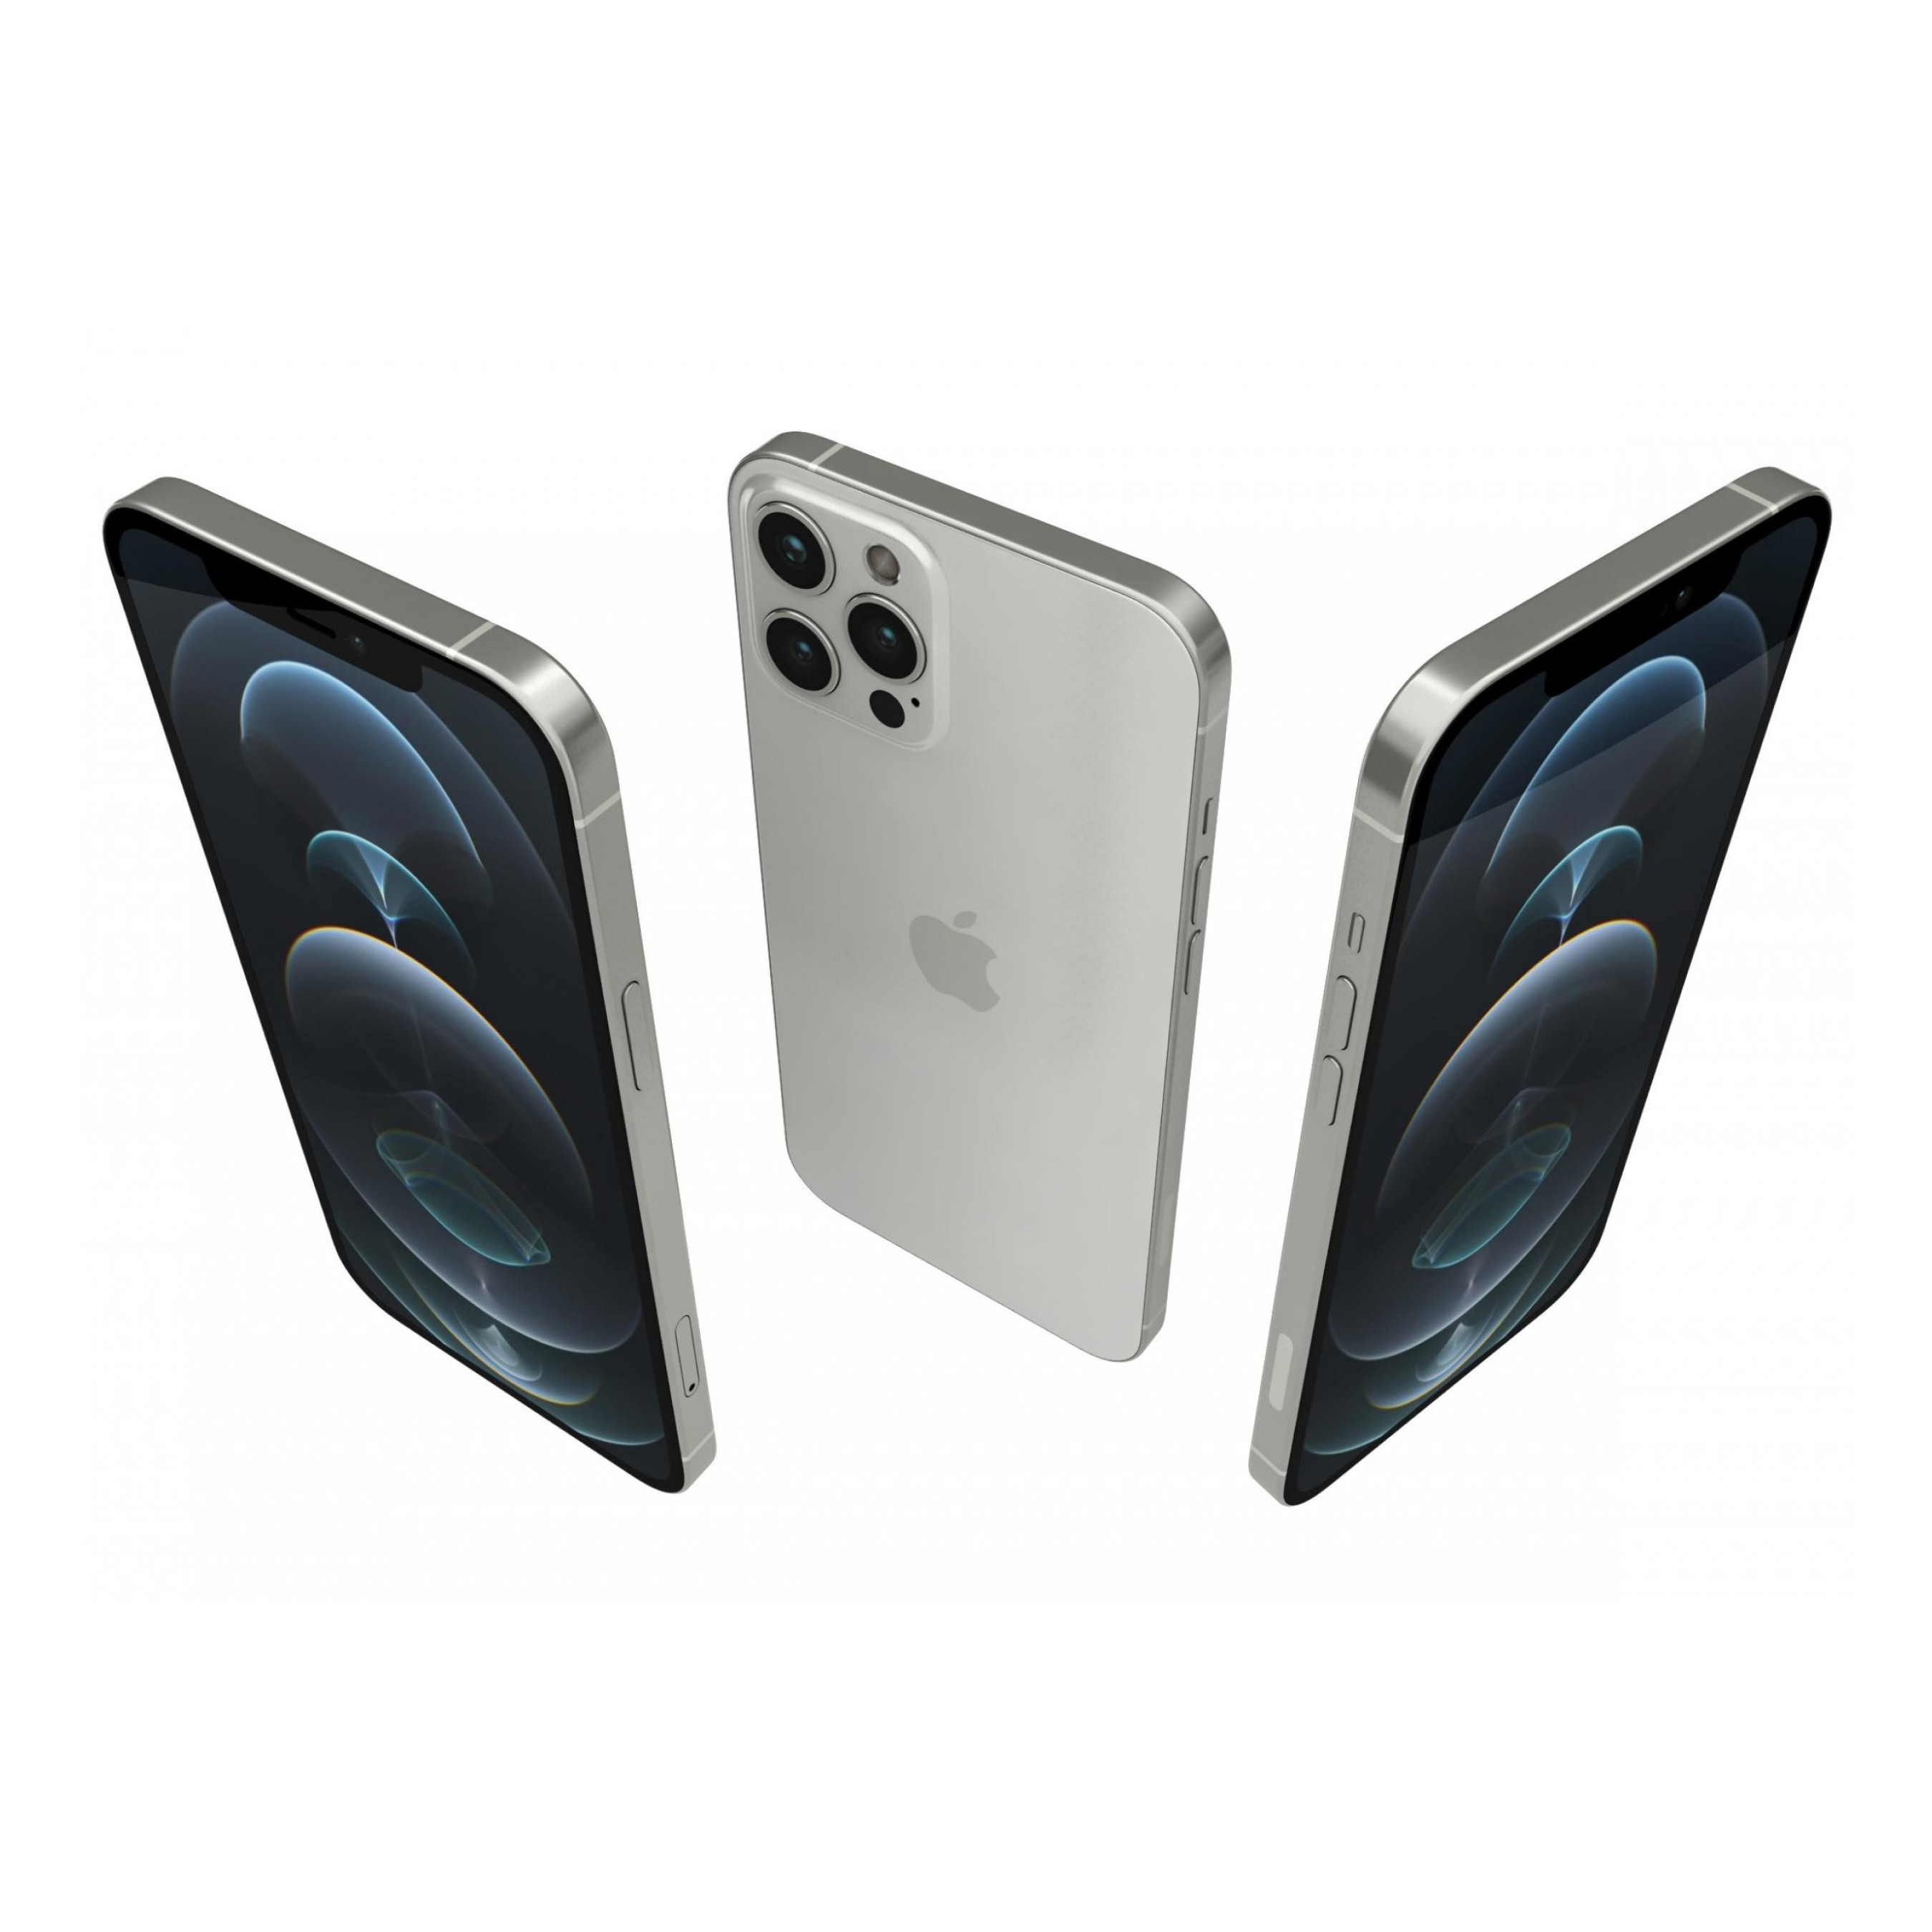 Apple iPhone 12 Pro Max 128Gb - Silver eSIM TAM